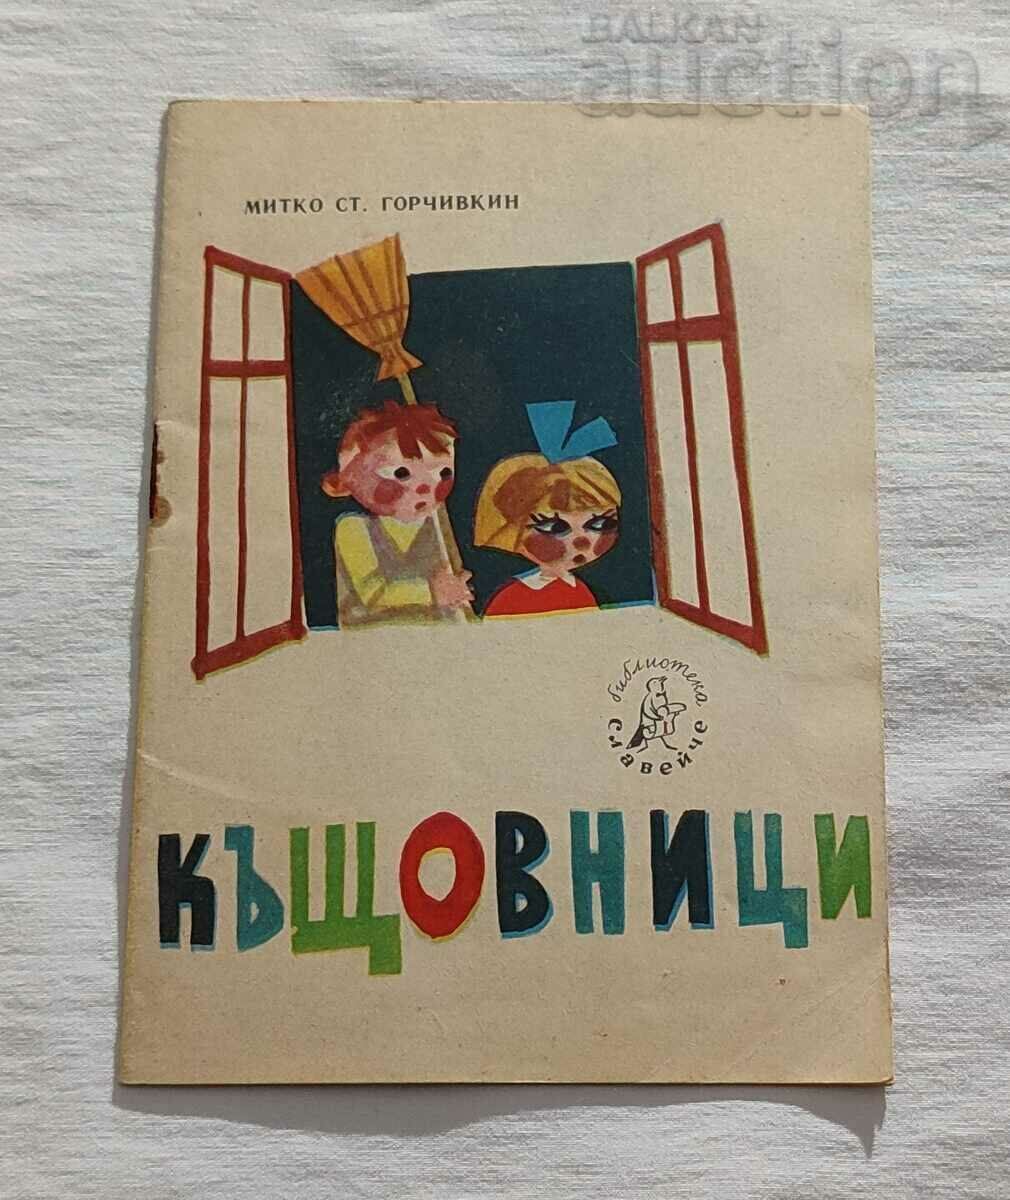 KASTOVNITICI MITKO GORCHIVKIN 1964 "NIGHTINGALE"